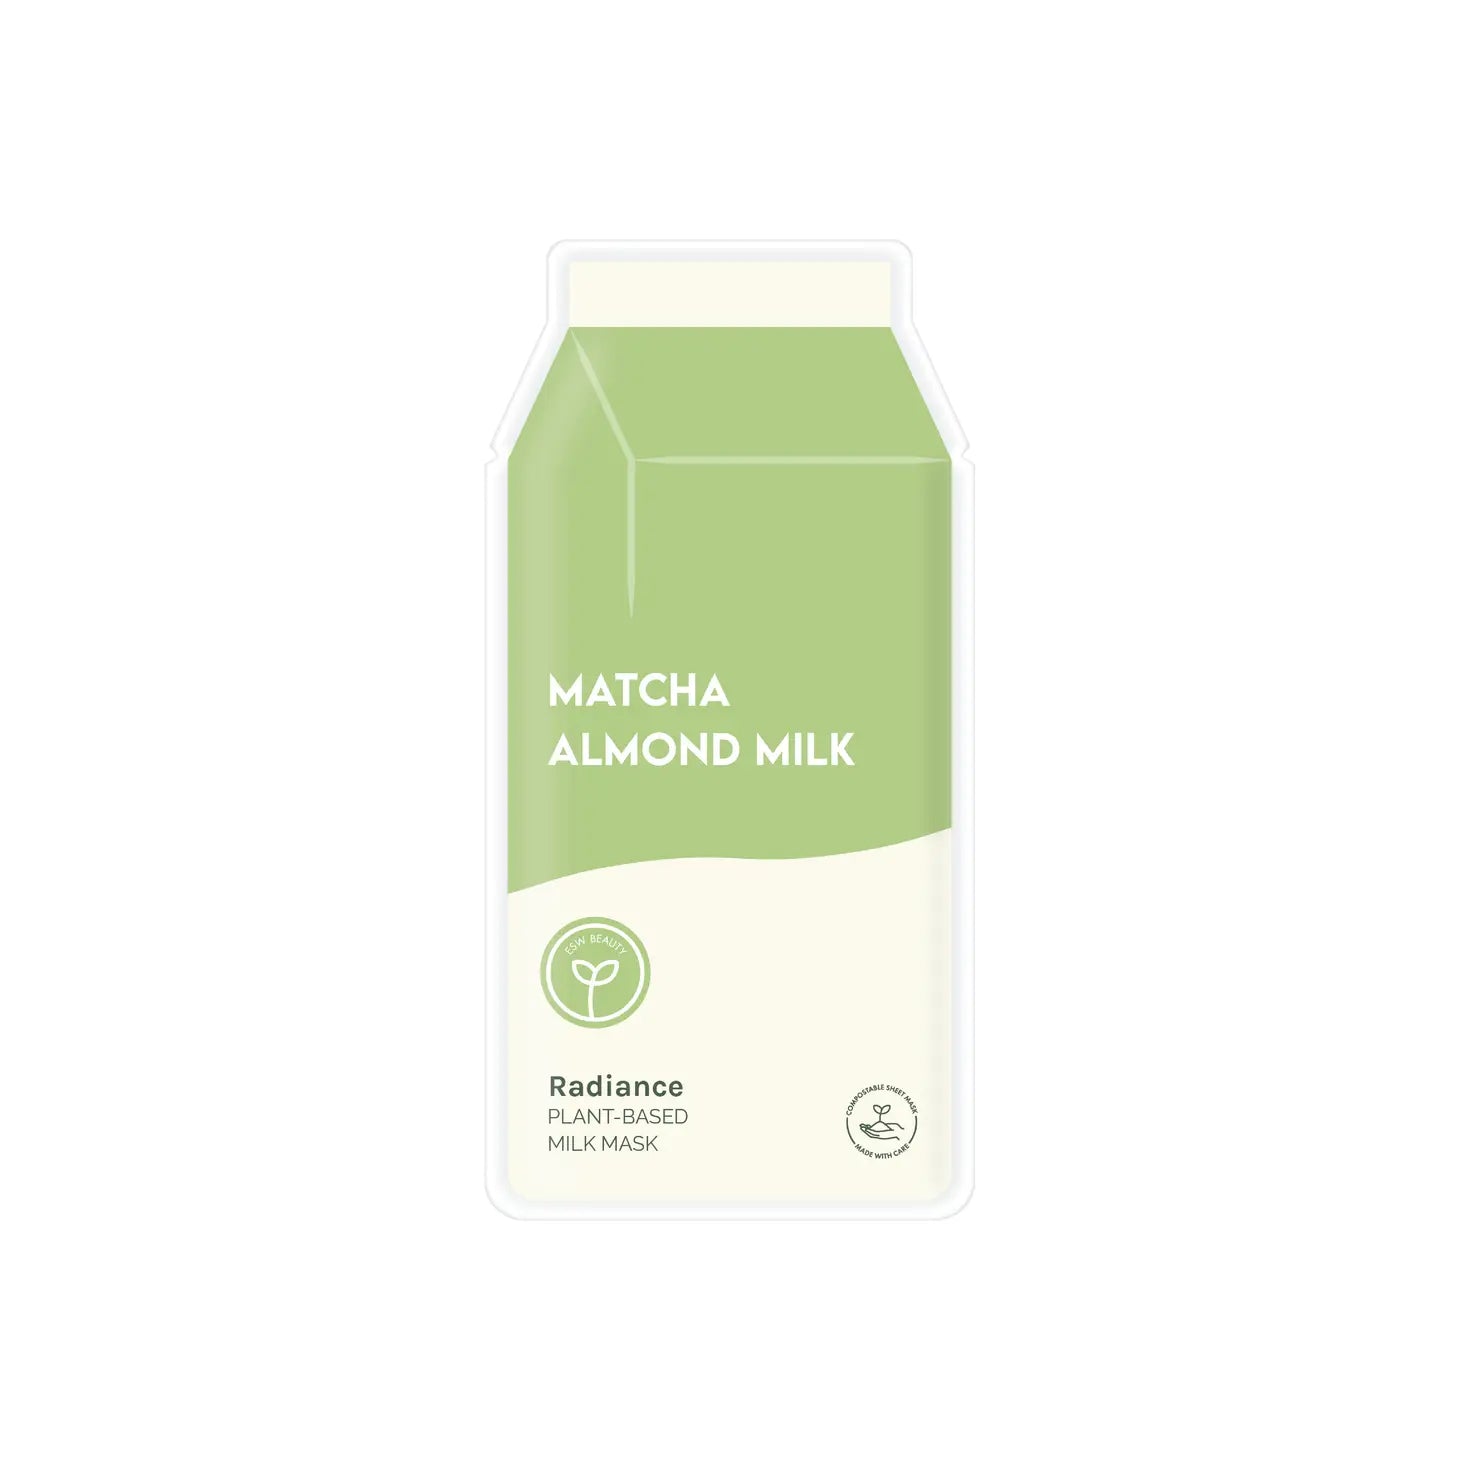 Matcha Almond Milk Mask